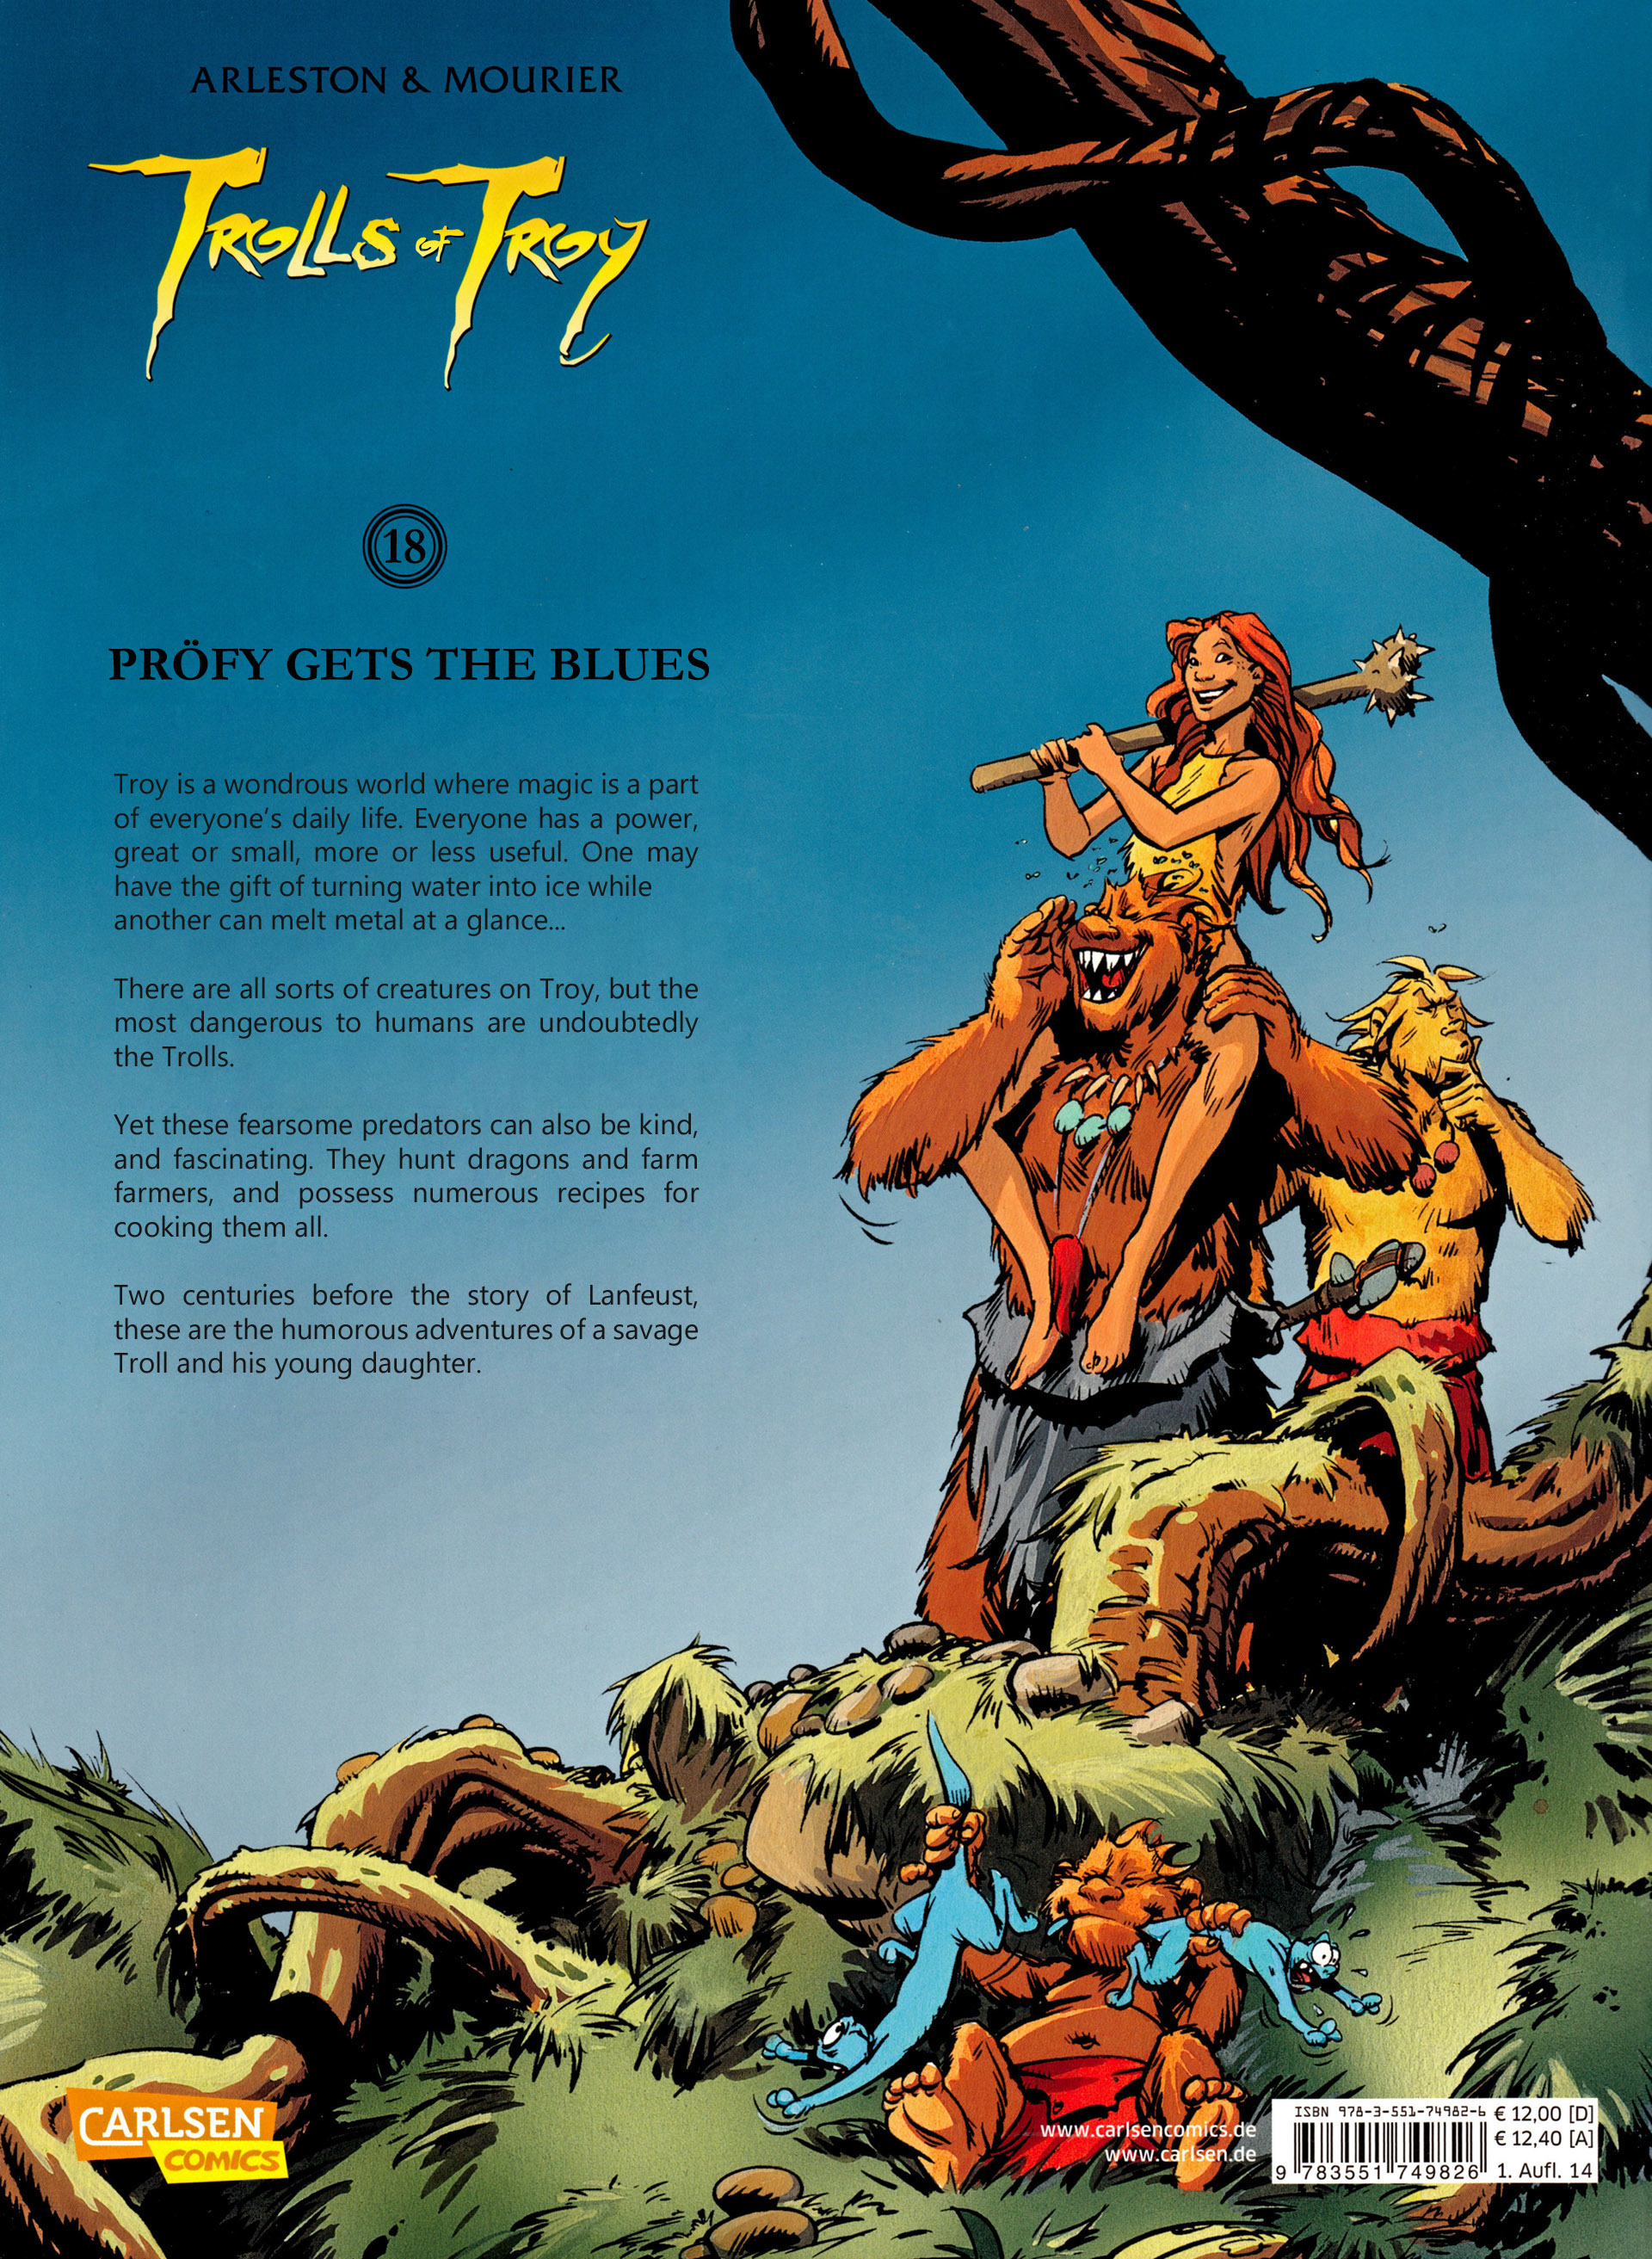 Read online Trolls of Troy comic -  Issue #18 - 50